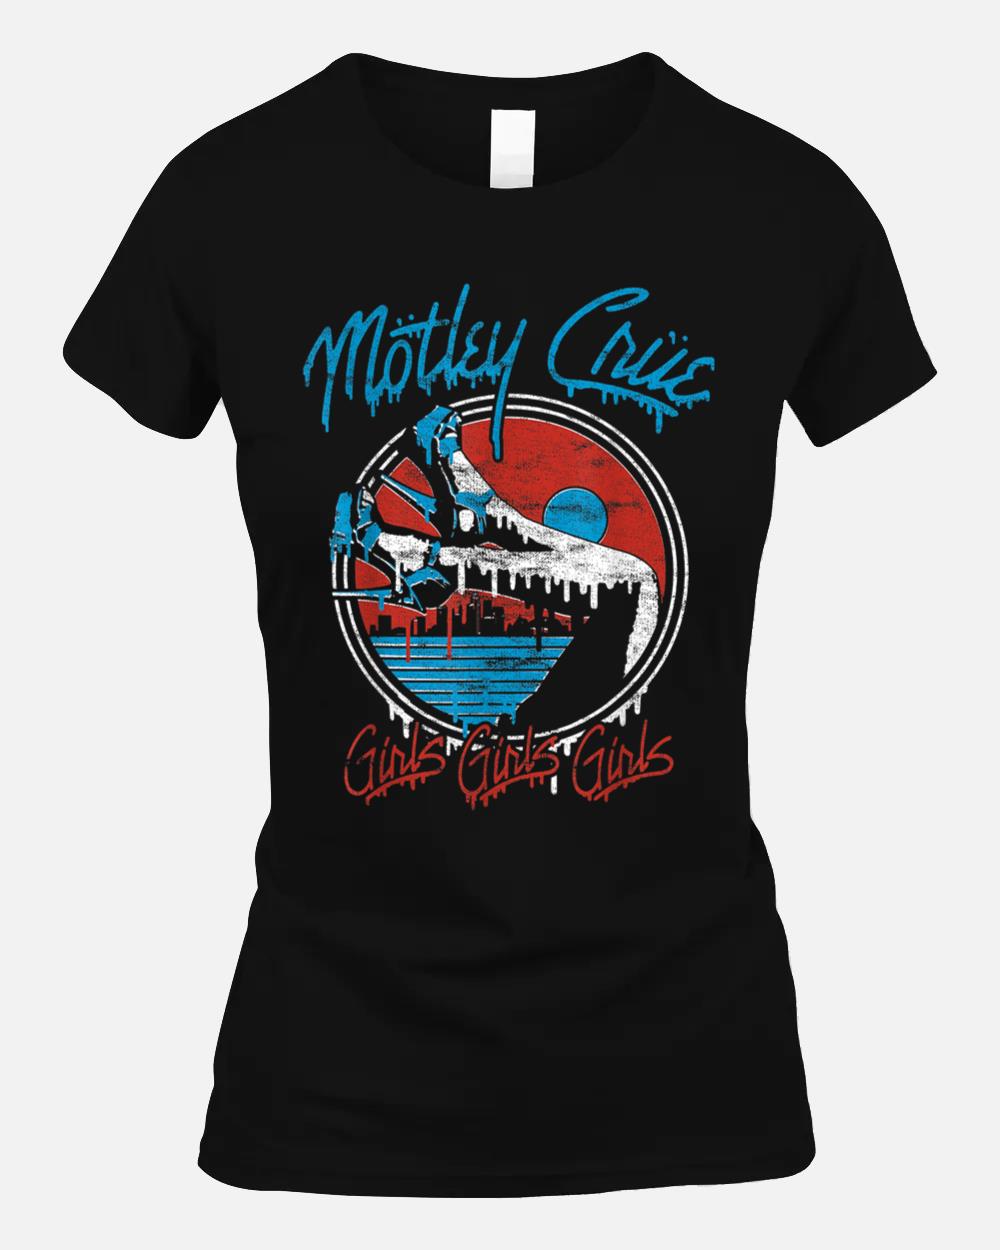 Mötley Crüe  Girls Girls Girls Legs Drip Unisex T-Shirt